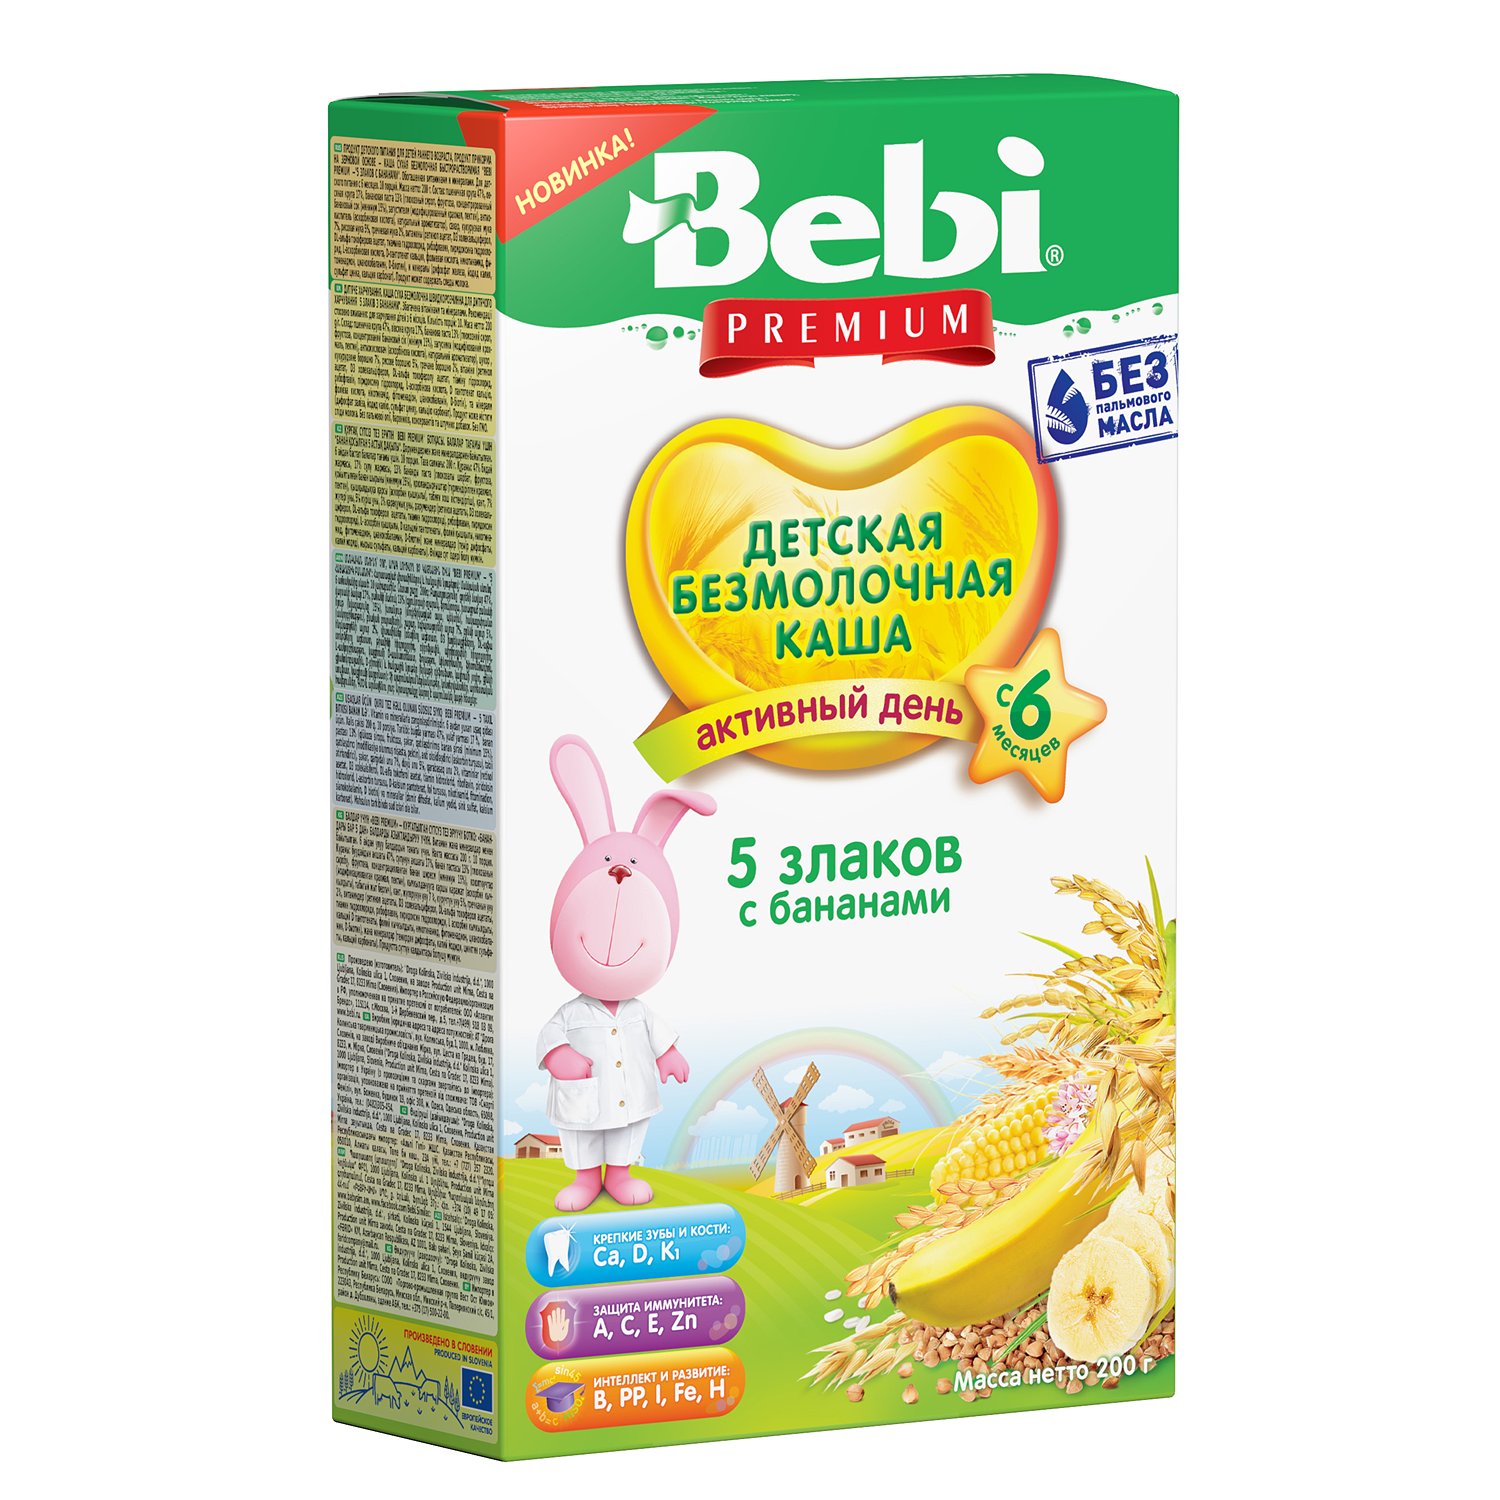 Каша безмолочная Bebi Premium 5злаков с бананами 200г с 6месяцев - фото 1